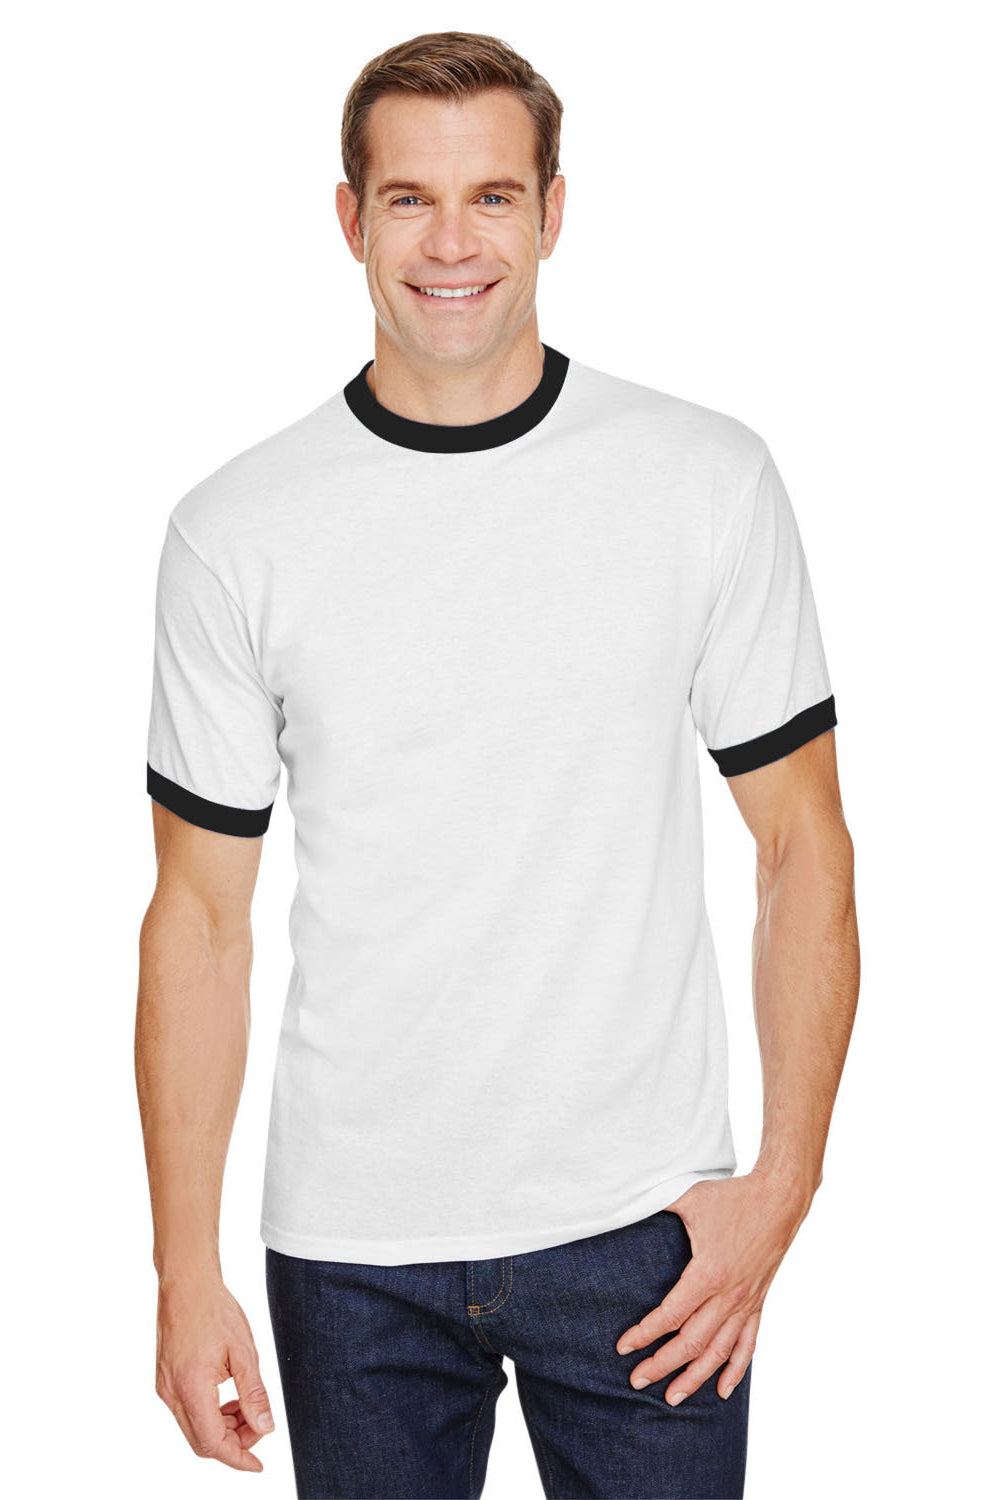 Augusta Sportswear 710 Mens Ringer Short Sleeve Crewneck T-Shirt White/Black Model Front